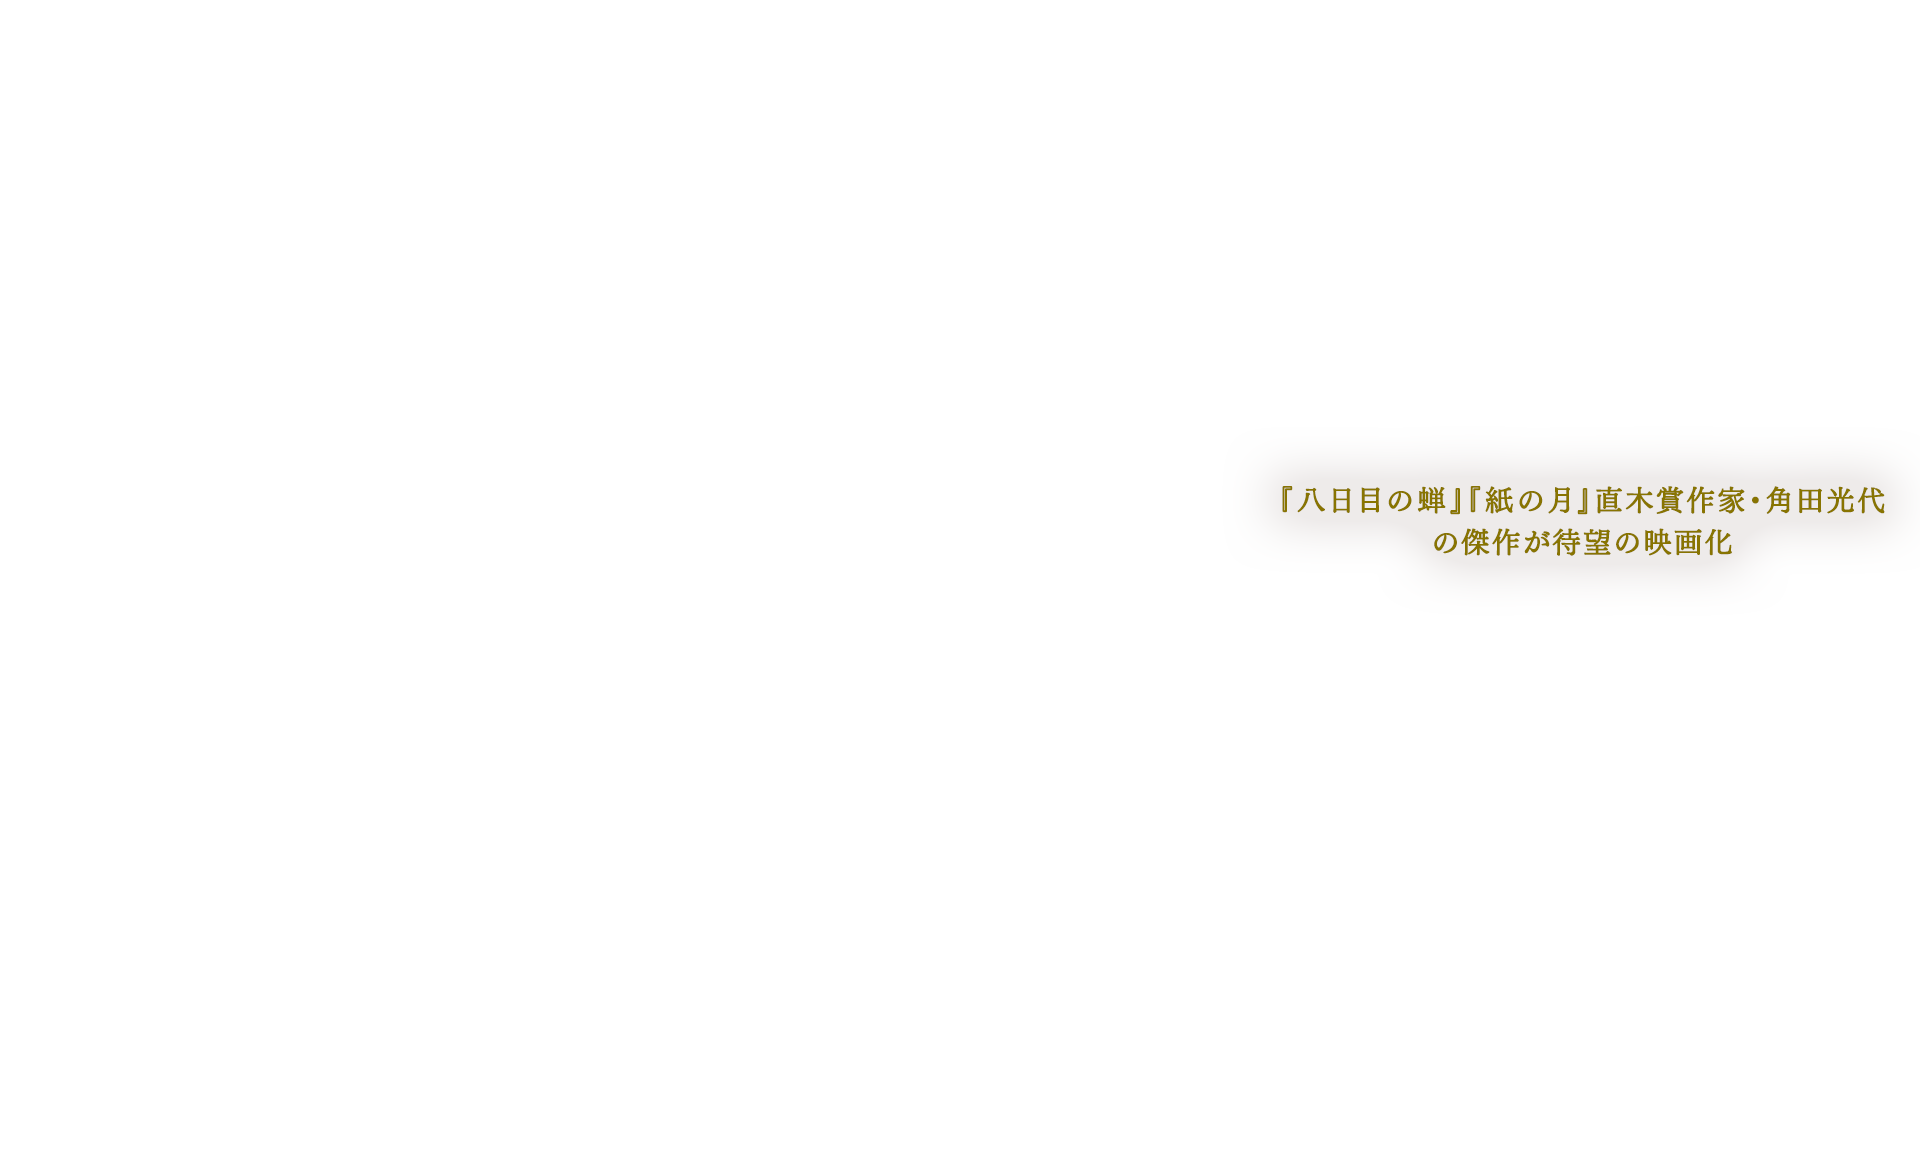 『八日目の蝉』『紙の月』直木賞作家・角田光代の傑作が待望の映画化